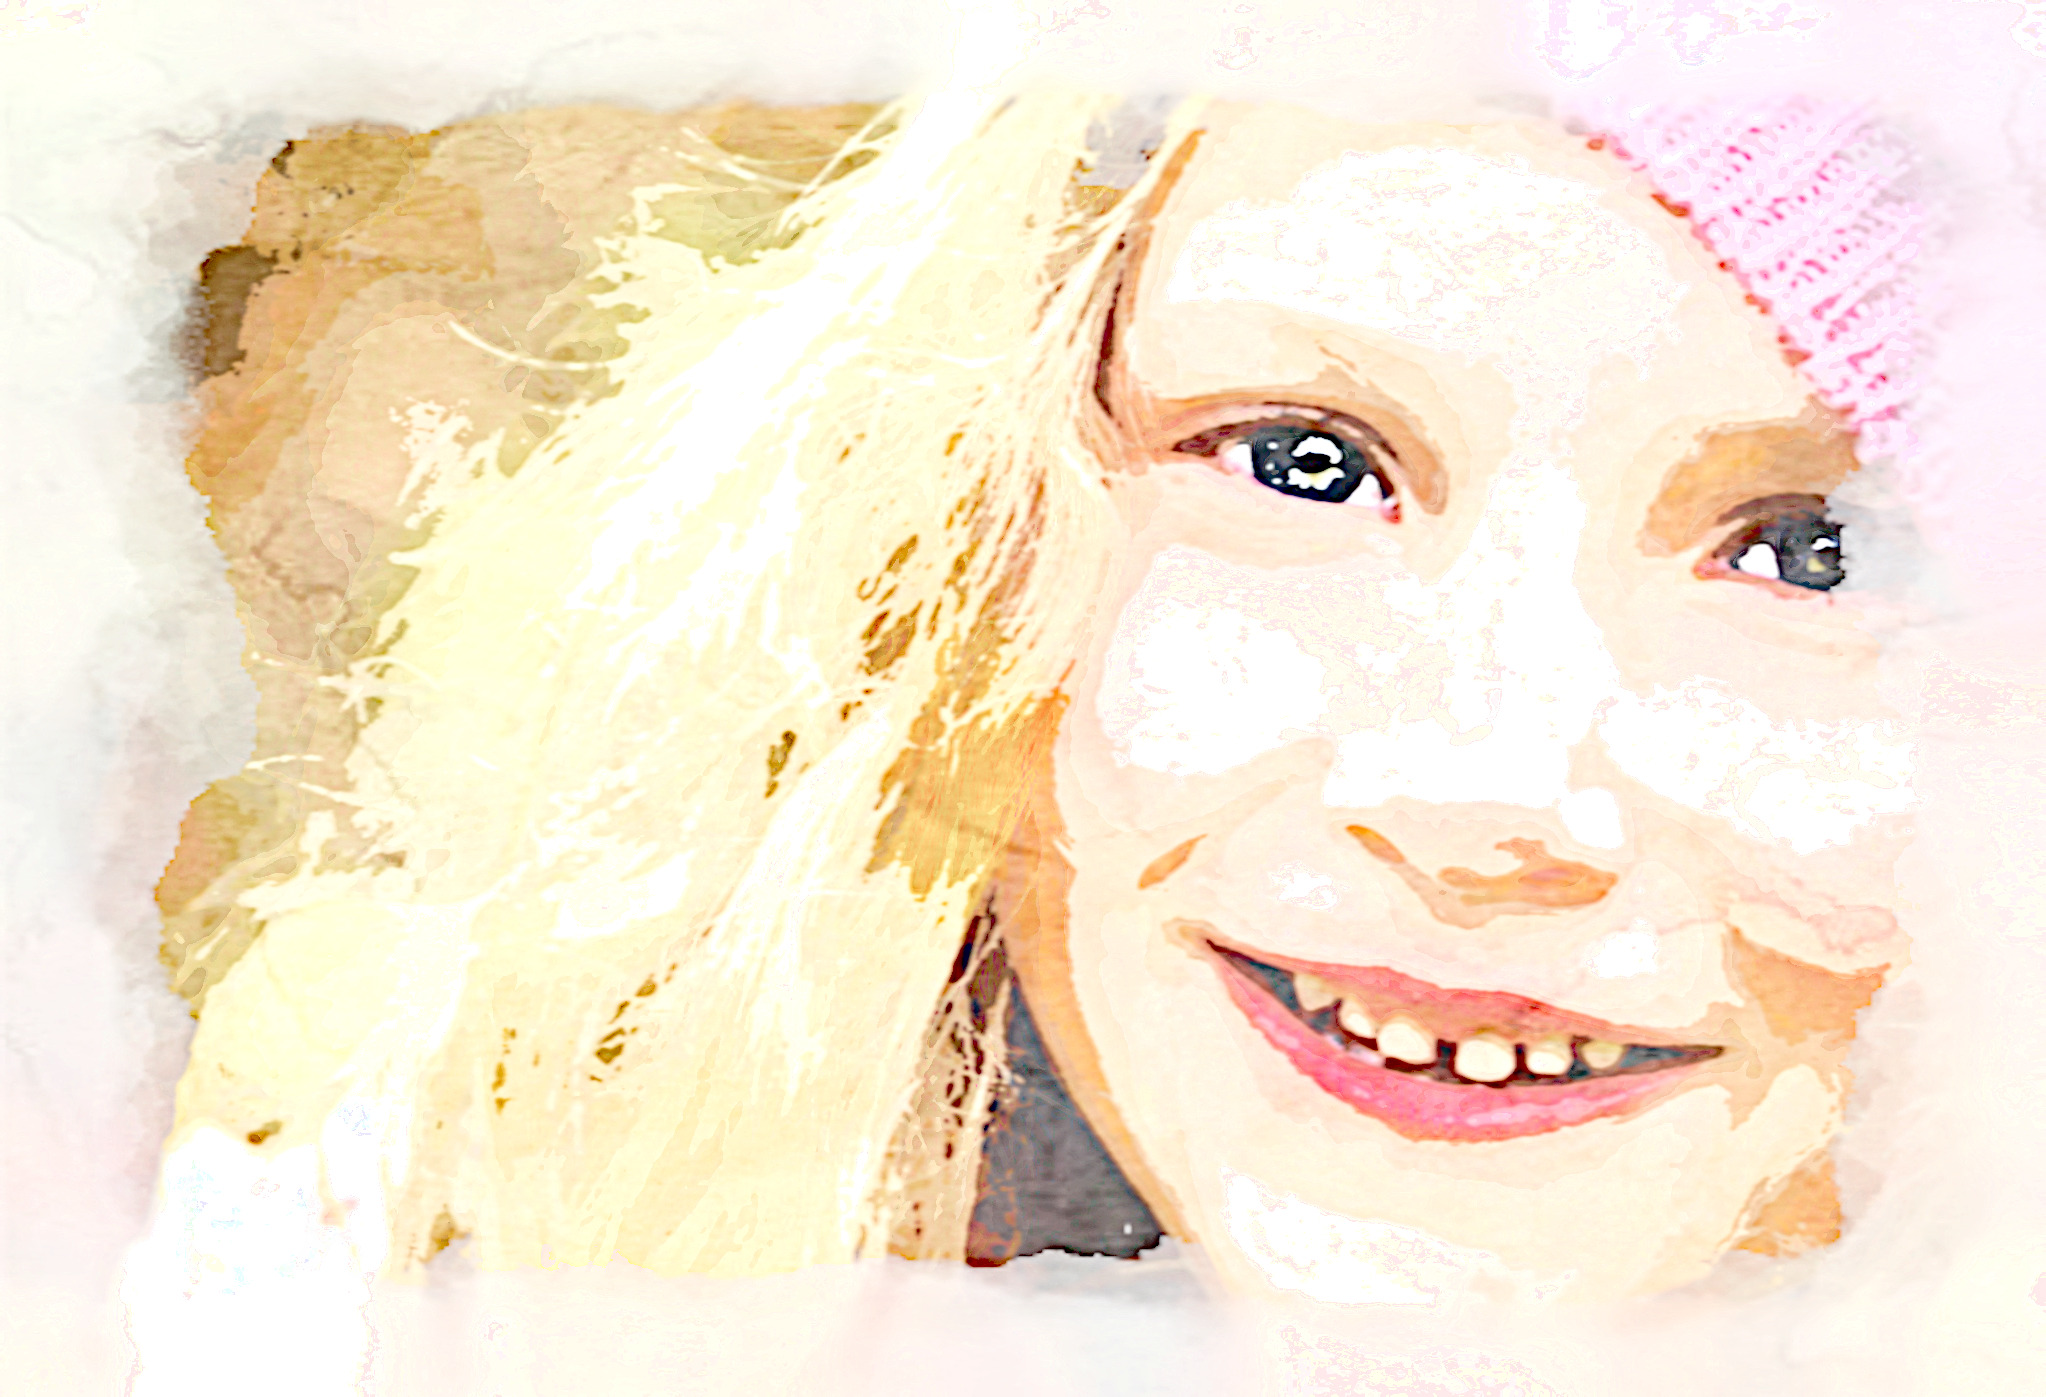 2020-03-24 09-54-18 child-476507_1920 as a digital aquarel, using18 colours, source portrait, look delicate plus.jpg